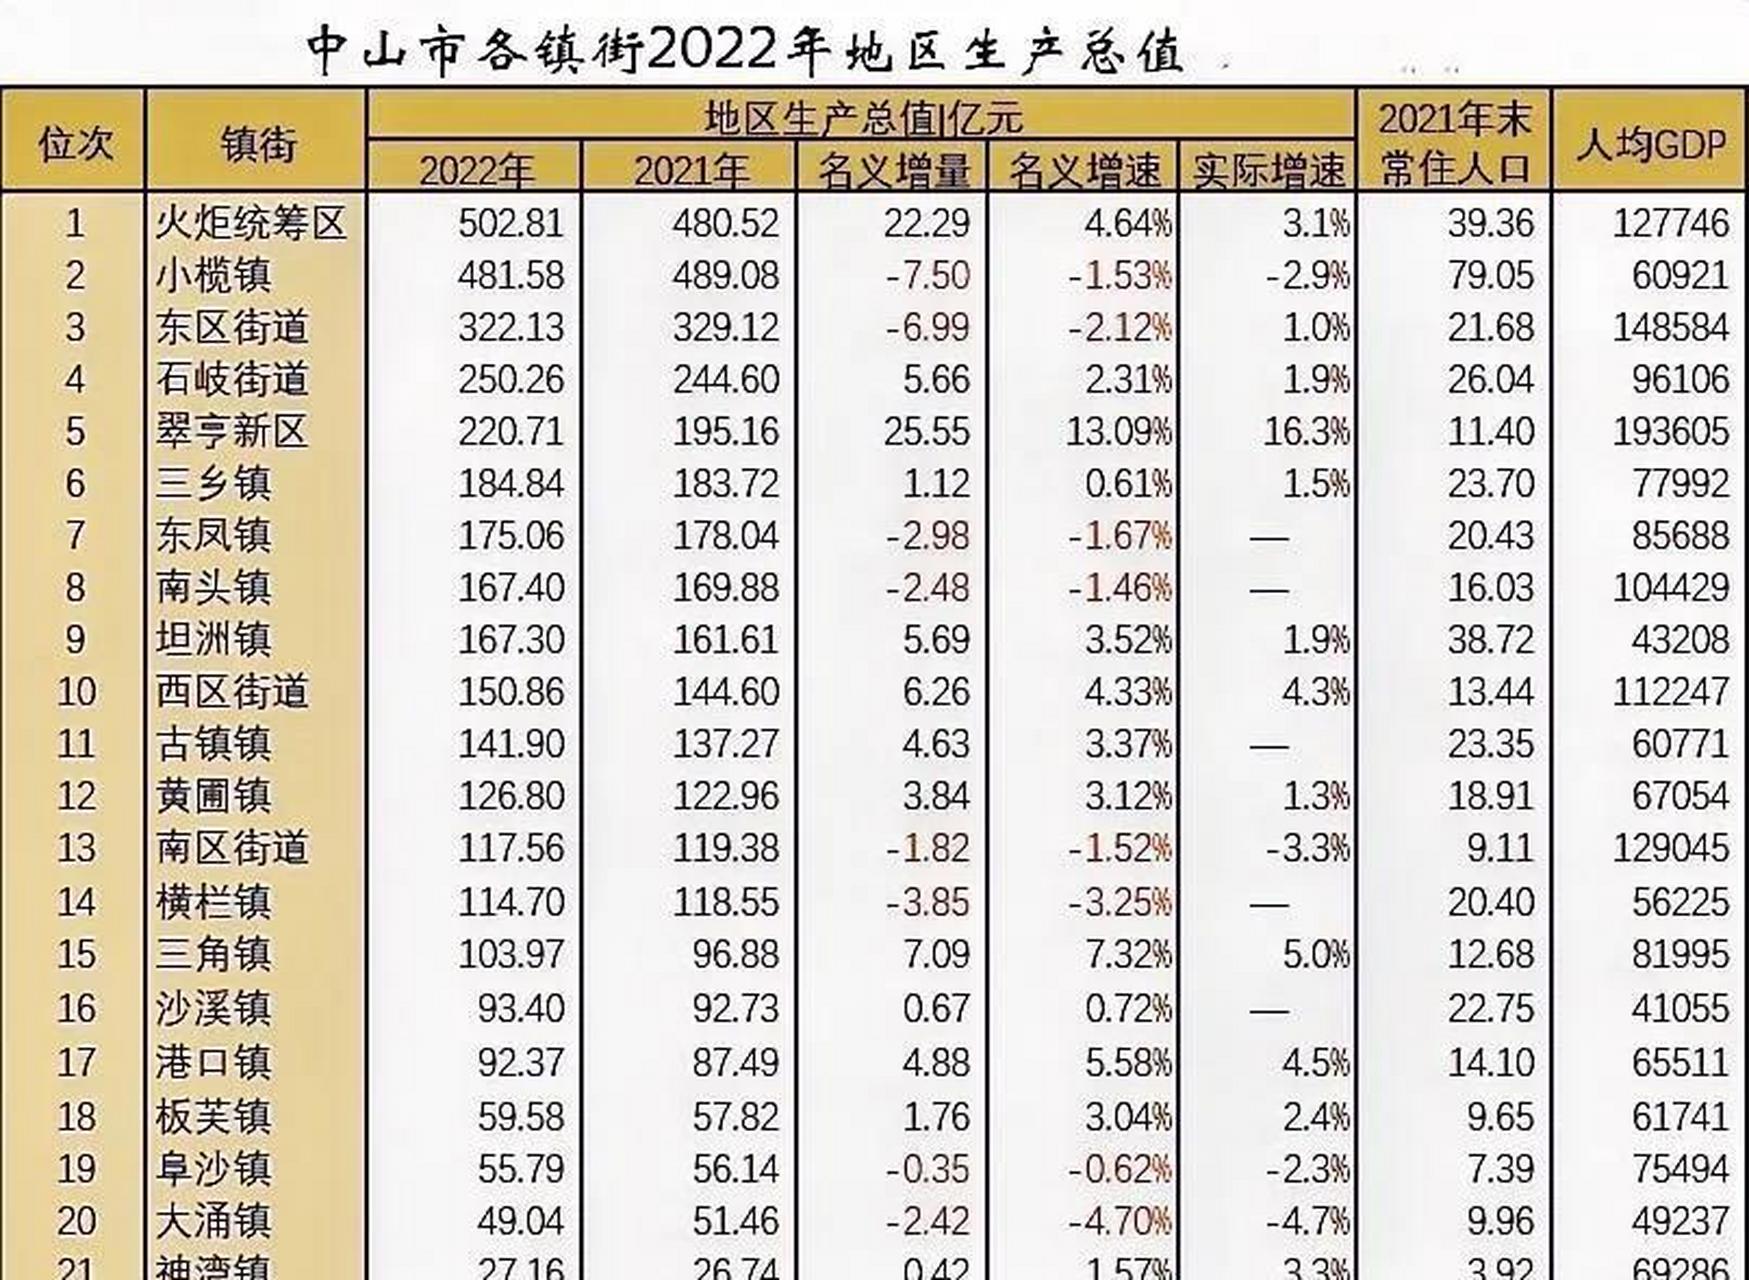 2022年中山市各镇街生产总值对比: 火炬区(50281亿)超过小榄(481